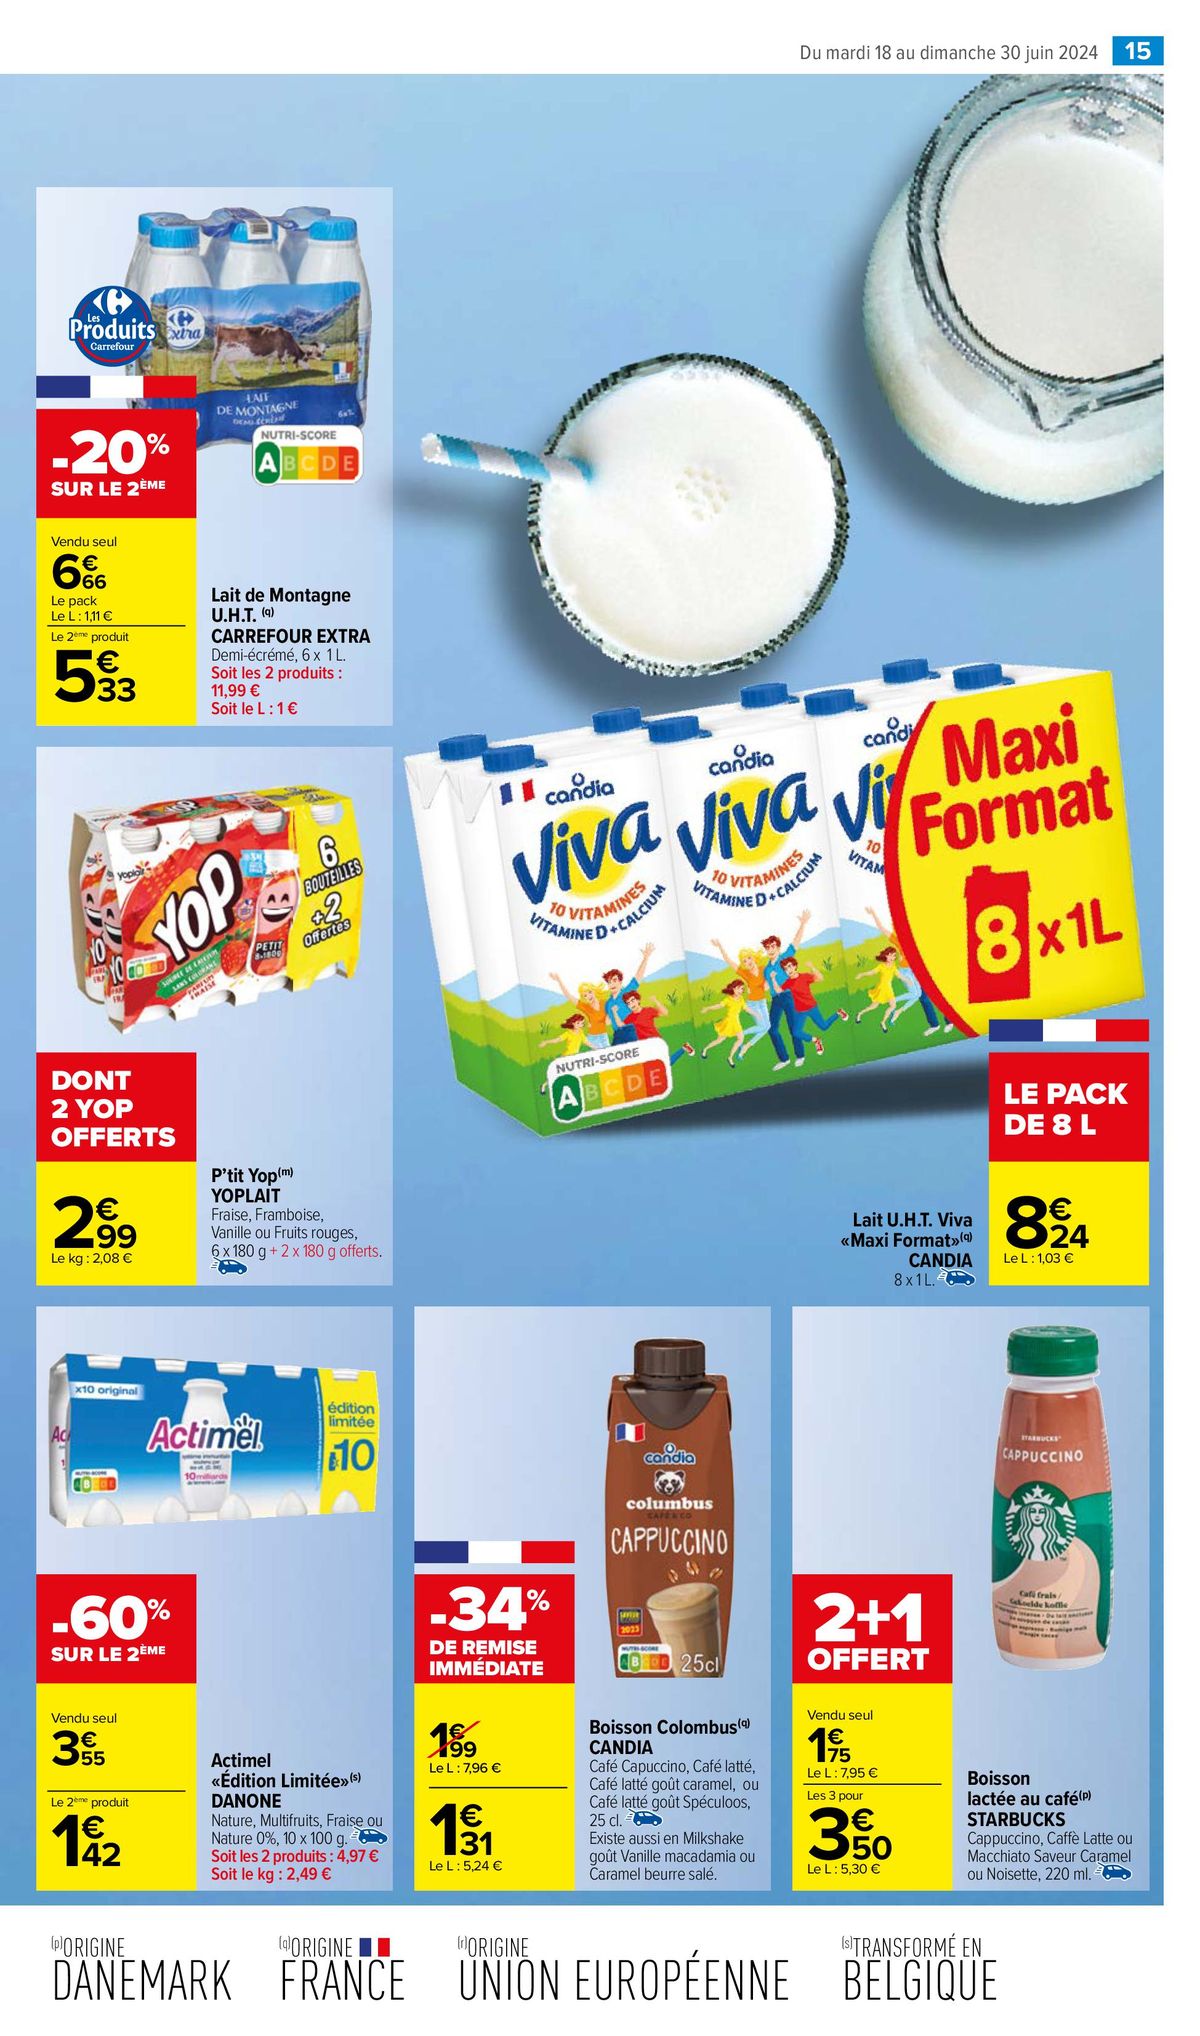 Catalogue Un miam pour les produits laitiers, page 00017